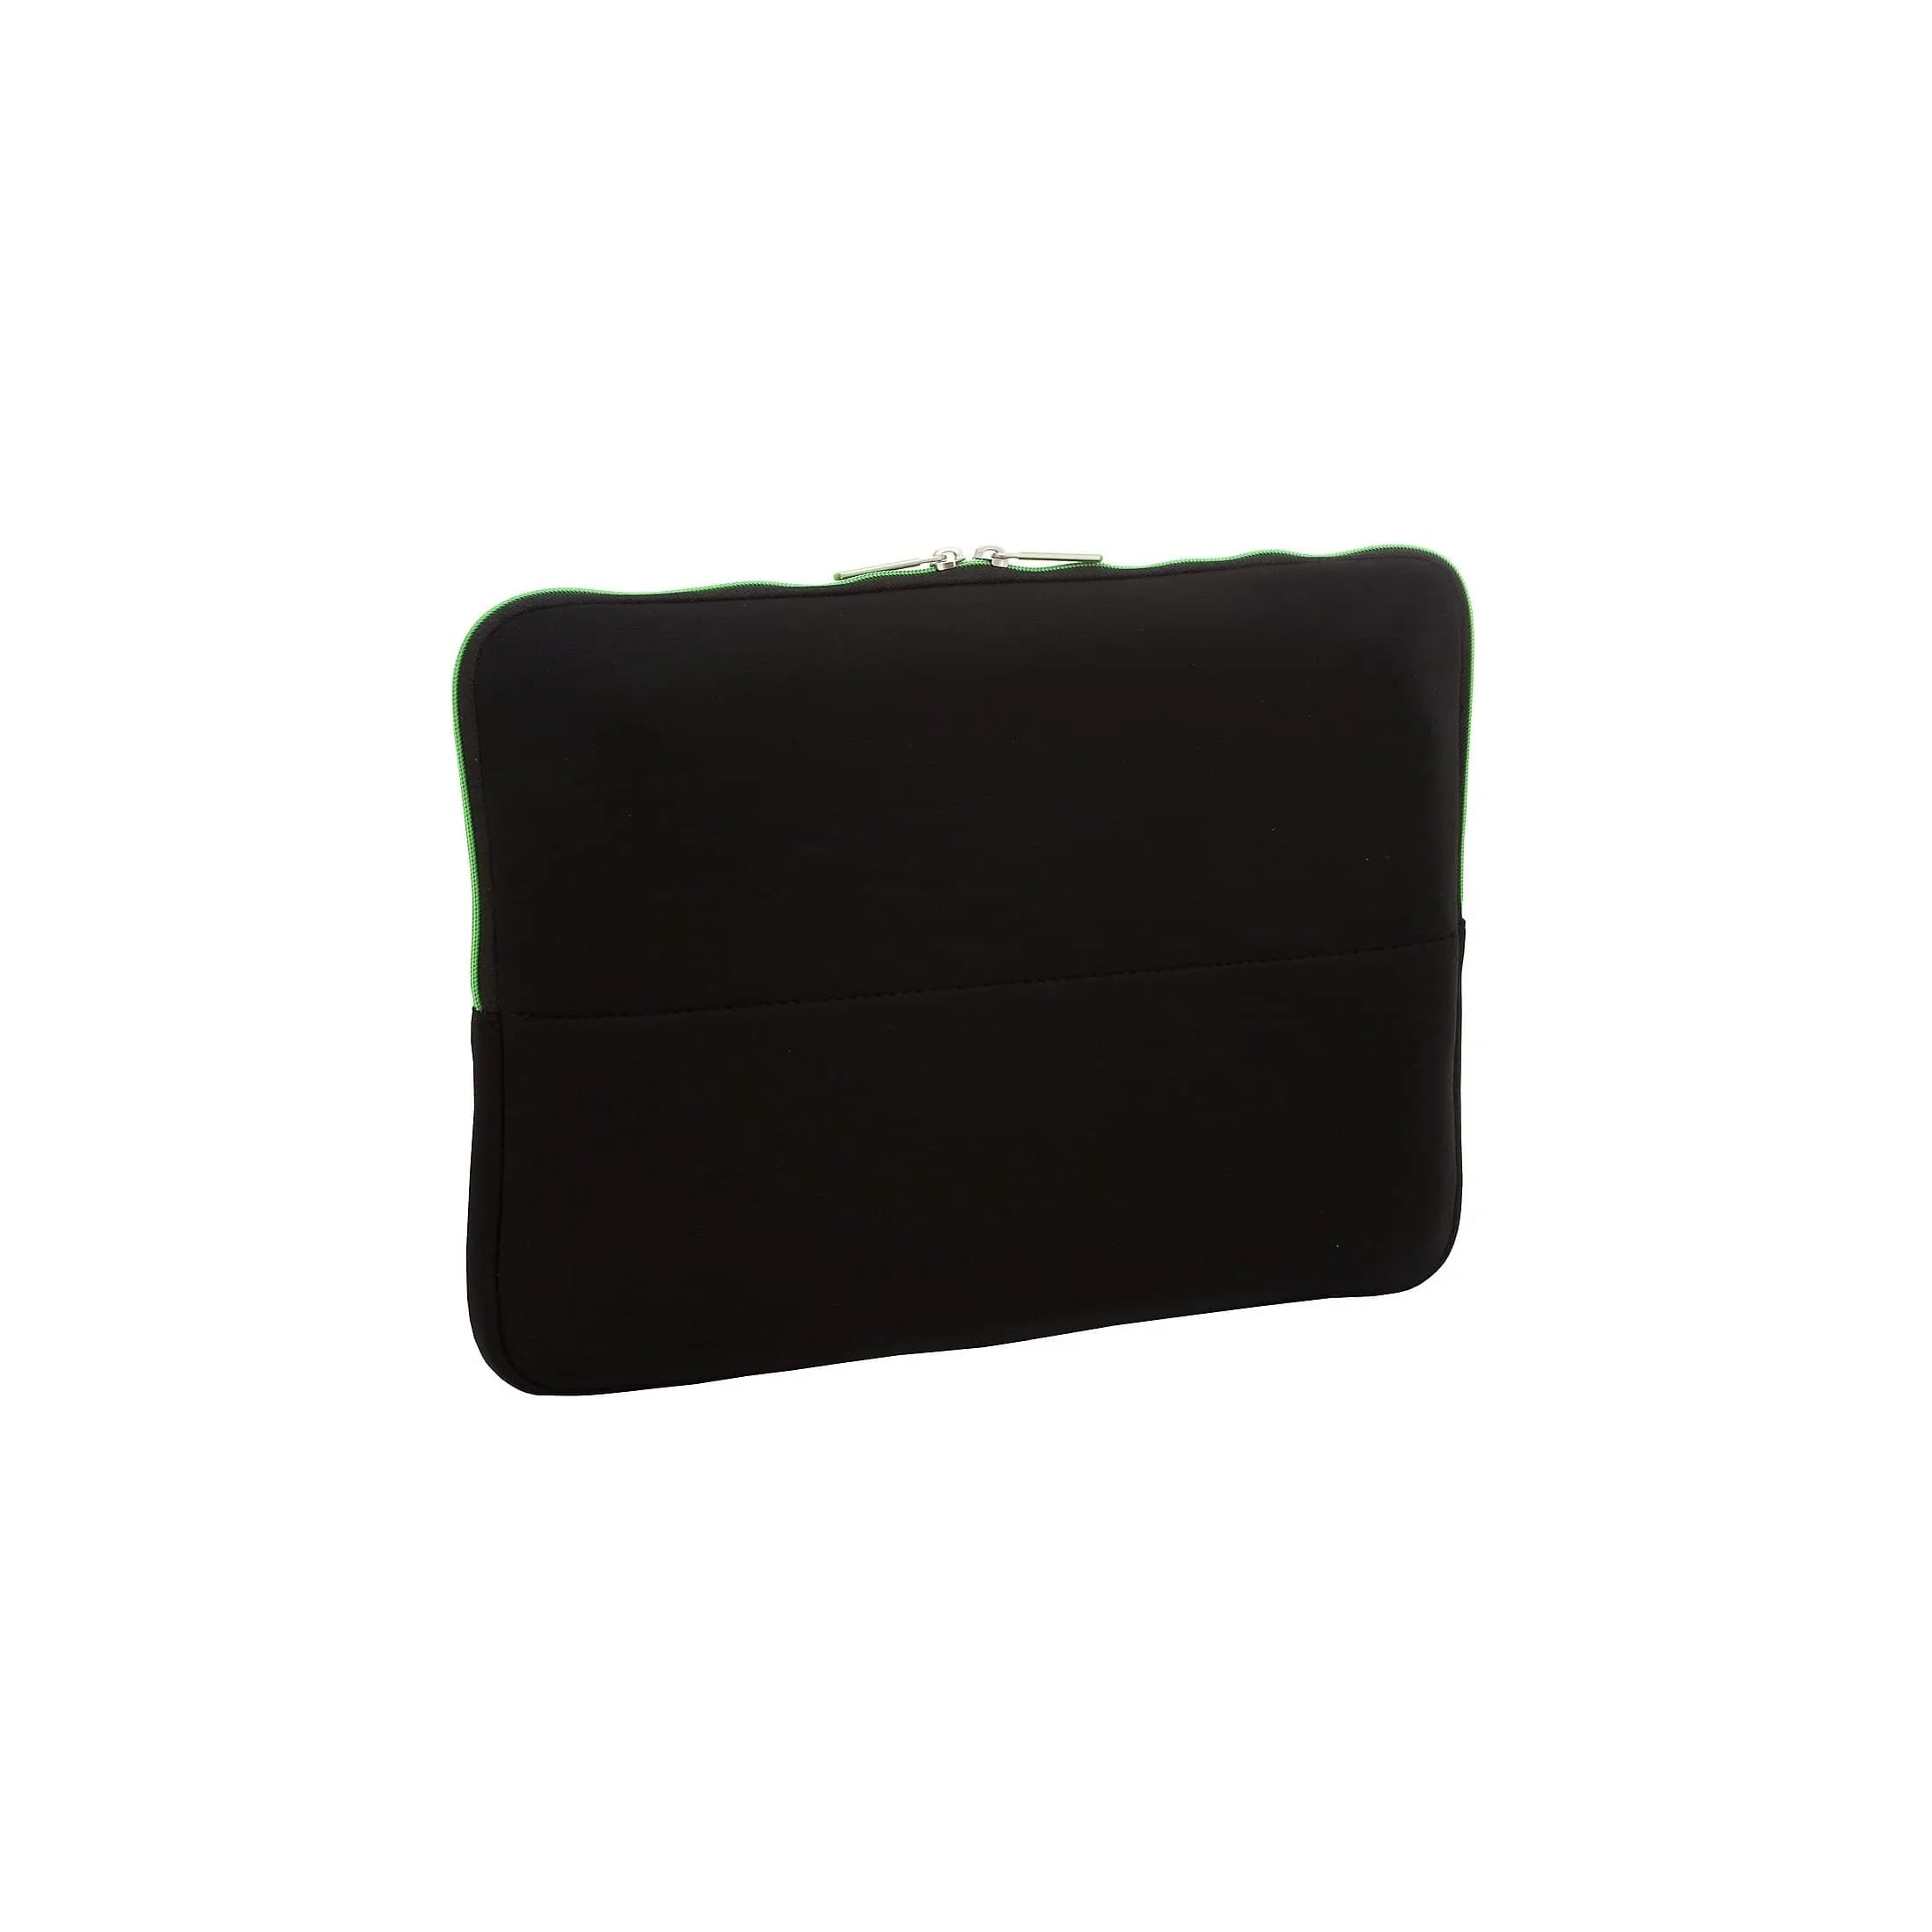 Samsonite Airglow laptop sleeve 40 cm - black/red